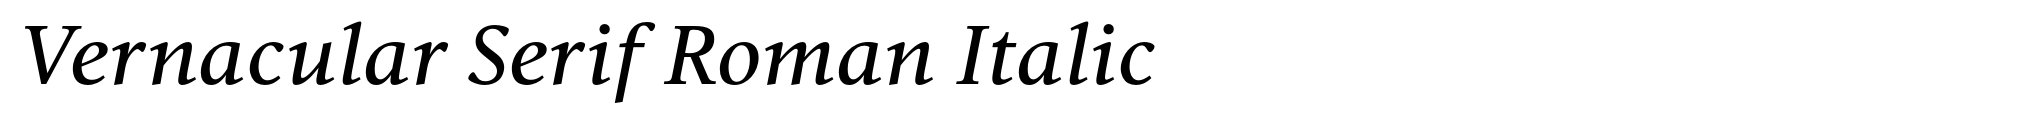 Vernacular Serif Roman Italic image